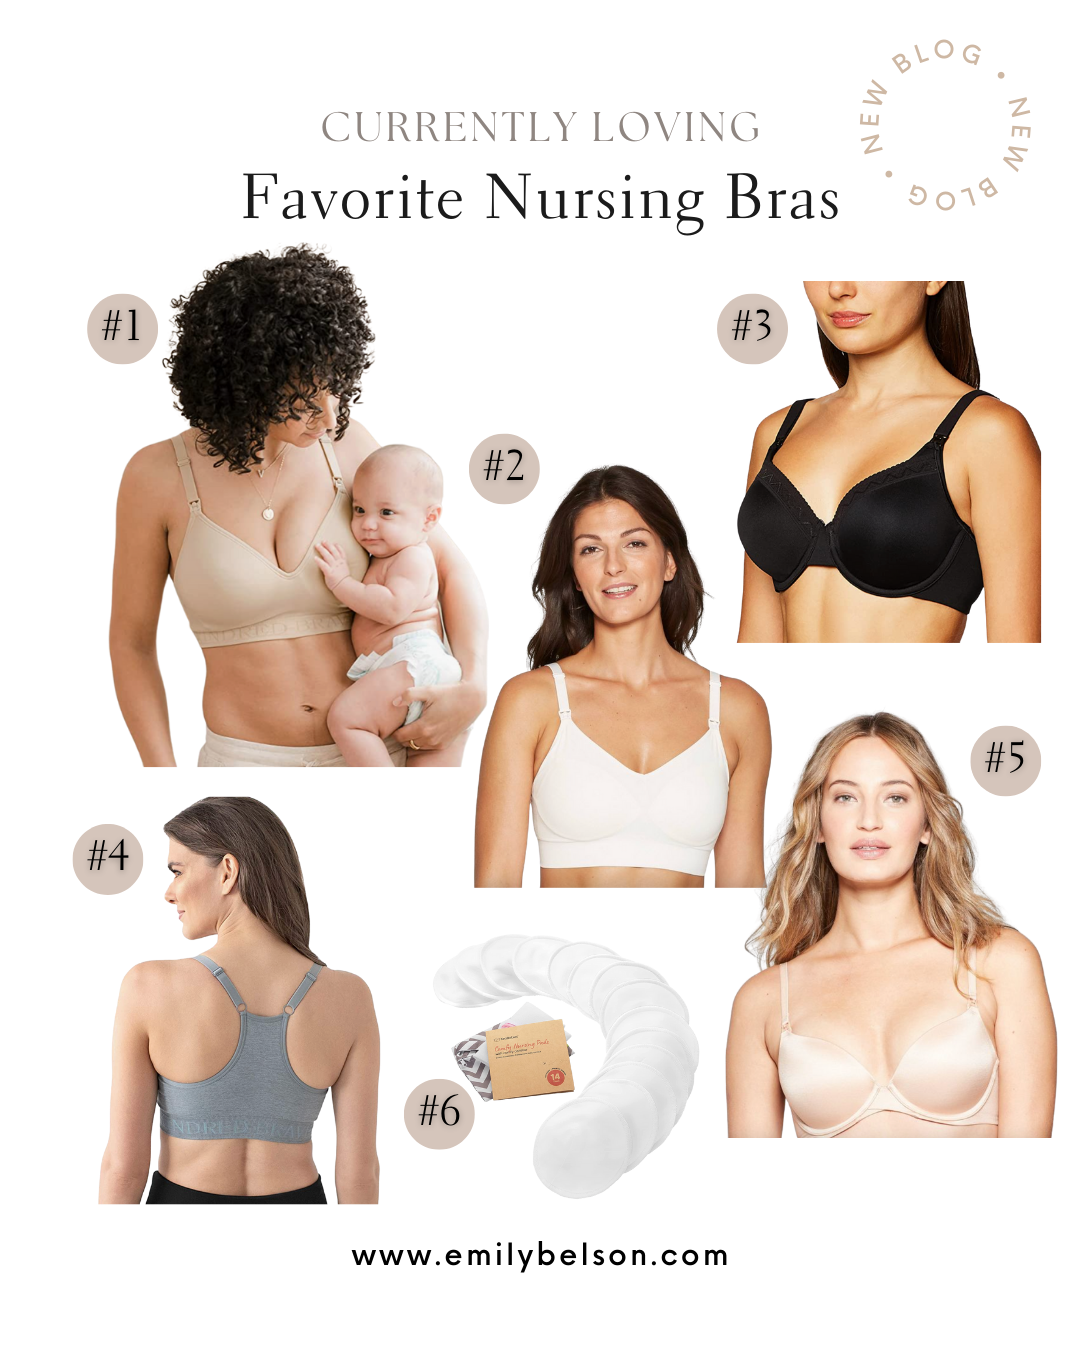 What type of nursing bra is your favorite? : r/beyondthebump